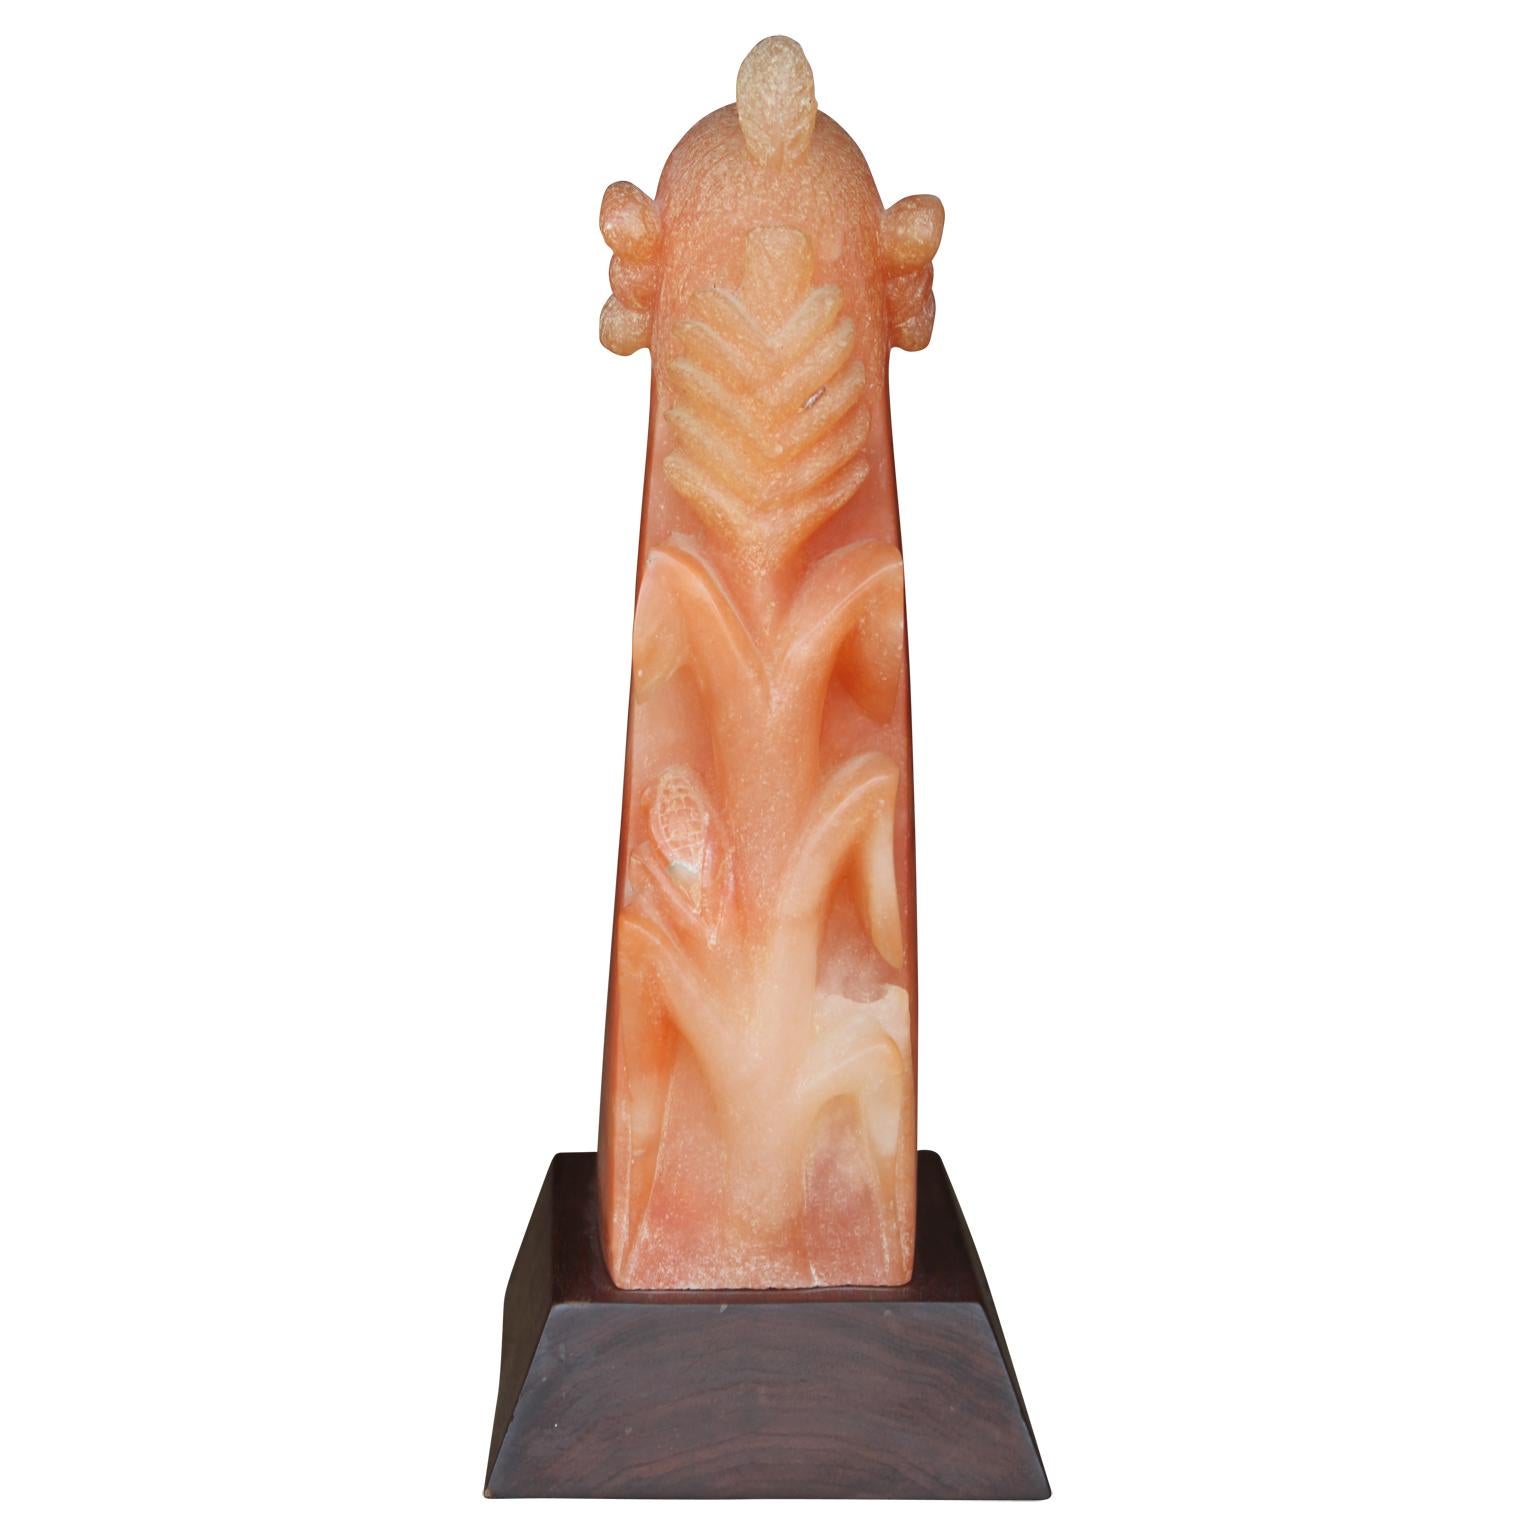 Eine reizende Skulptur eines Maismännchens aus New Mexico, die fein in einem schönen, durchscheinenden rosa Alabaster geformt ist. Sie ist auf einem dunklen Holzsockel befestigt, der die schönen Rosatöne der Skulptur unterstreicht.